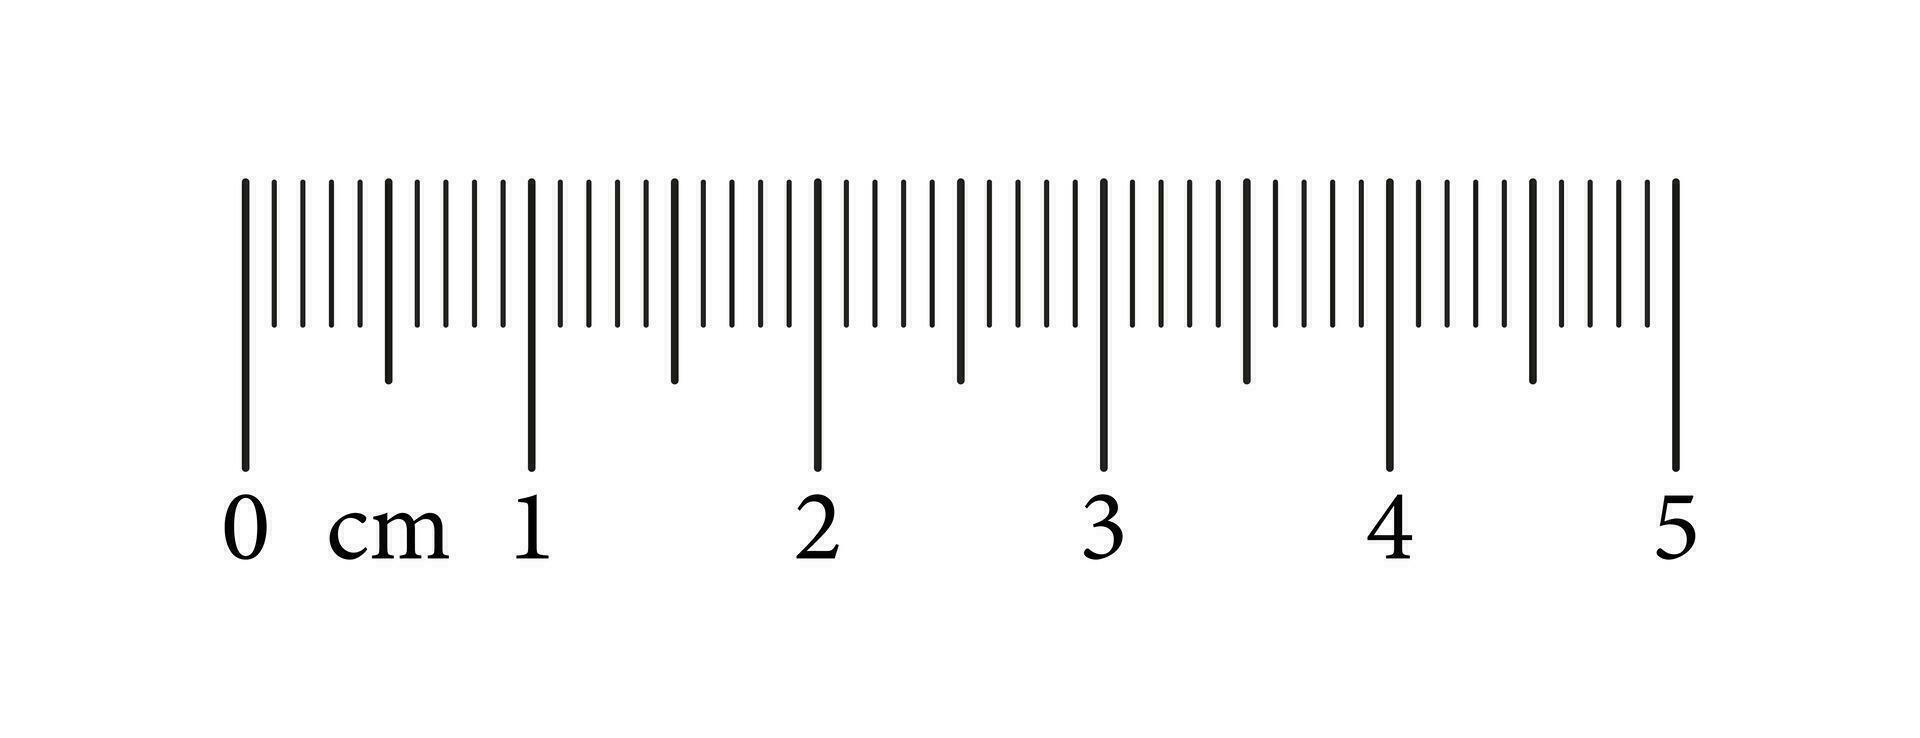 misurazione grafico con 5 centimetri. lunghezza misurazione matematica, distanza, altezza, cucire attrezzo. righello scala con numeri. grafico vettore illustrazione.